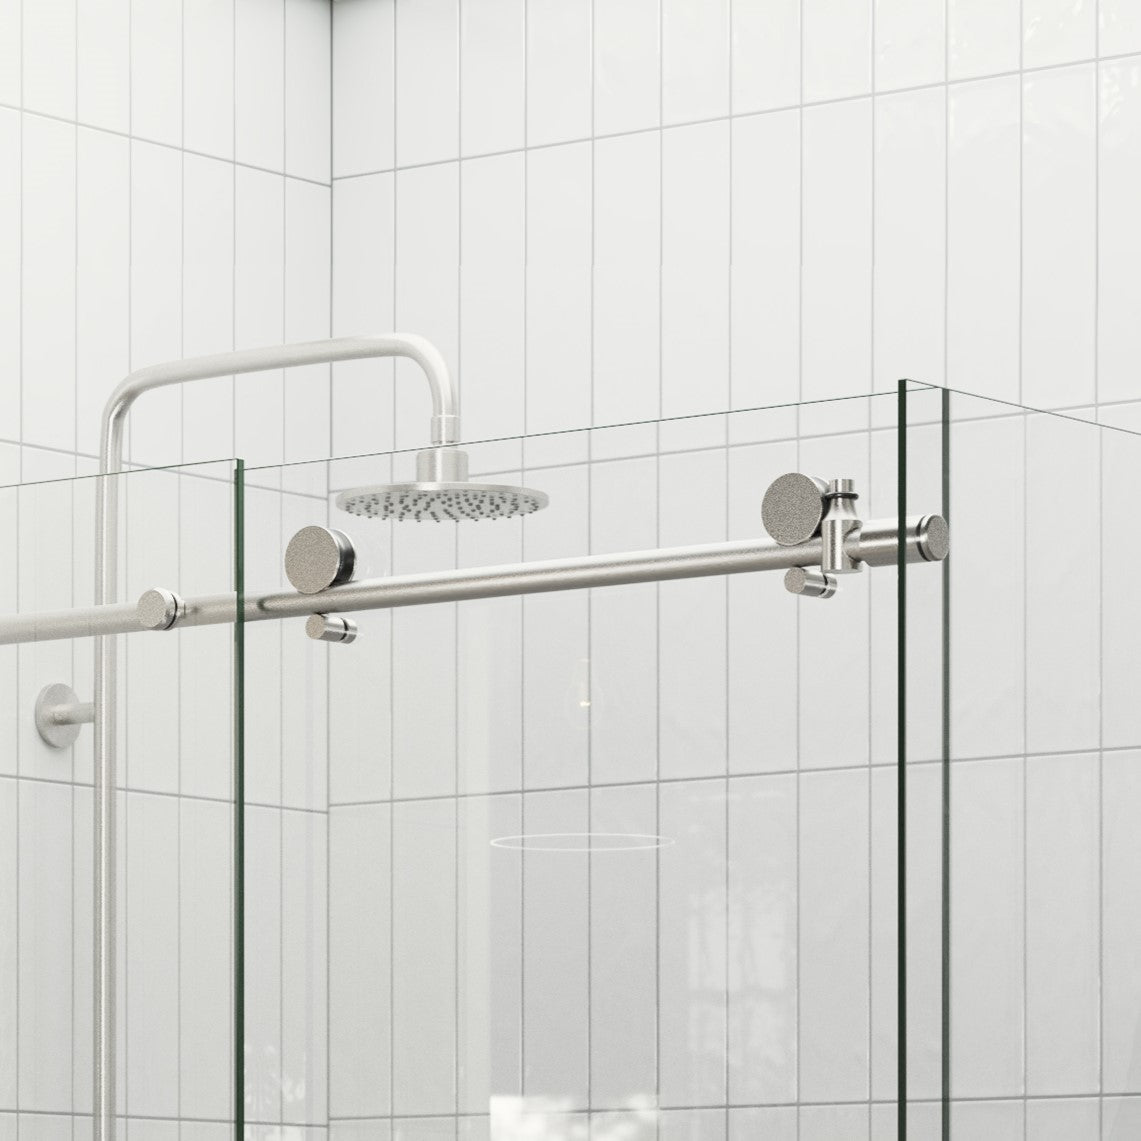 Sliding Shower Screen Enclosure - Brushed Nickel